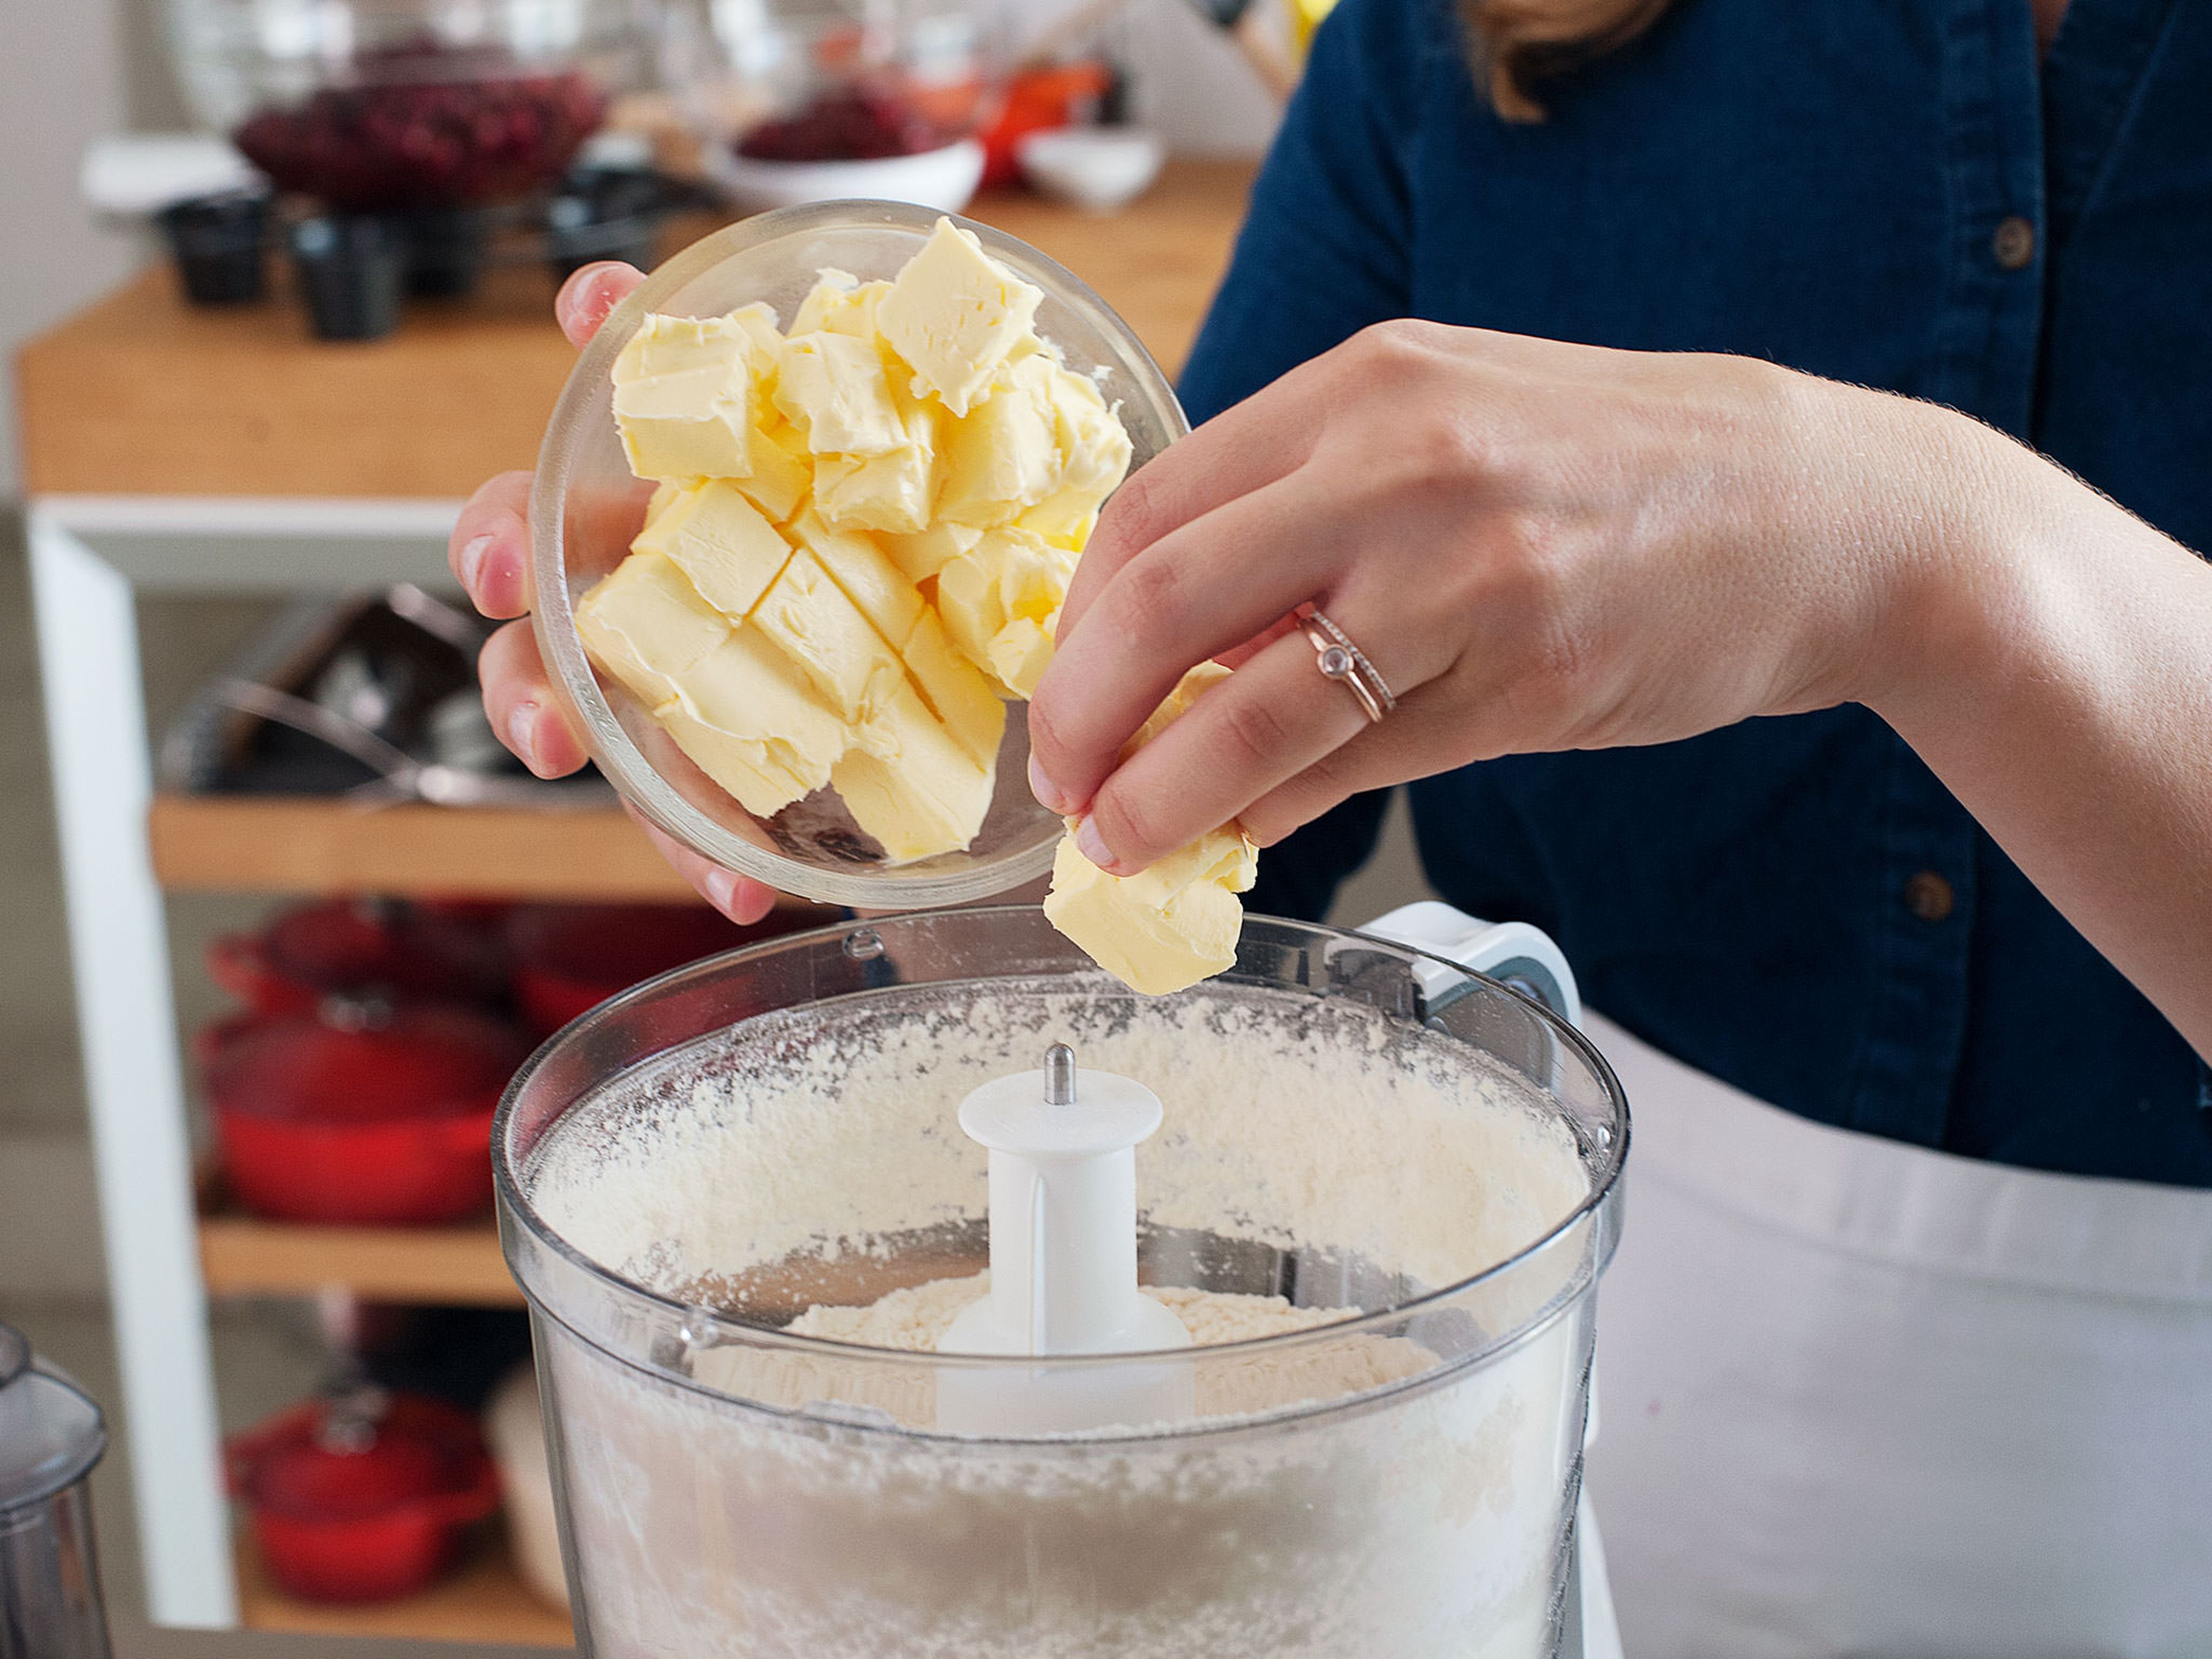 Für den Pie-Teig Mehl, einen Teil des Zuckers und einen Teil des Salzes vermengen. Butter dazugeben und mit den Händen oder einem Zerkleinerer verkneten, bis sich große Streusel bilden. Eine Mulde in die Mitte des Teig formen und nach und nach Eiswasser hineingießen. Dabei den Teig mit den Händen vermengen, bis das Wasser vollständig eingearbeitet ist und sich ein Streuselteig gebildet hat. Falls der Teig zu trocken ist, mehr Wasser dazugeben, am besten einen Esslöffel nach dem anderen.